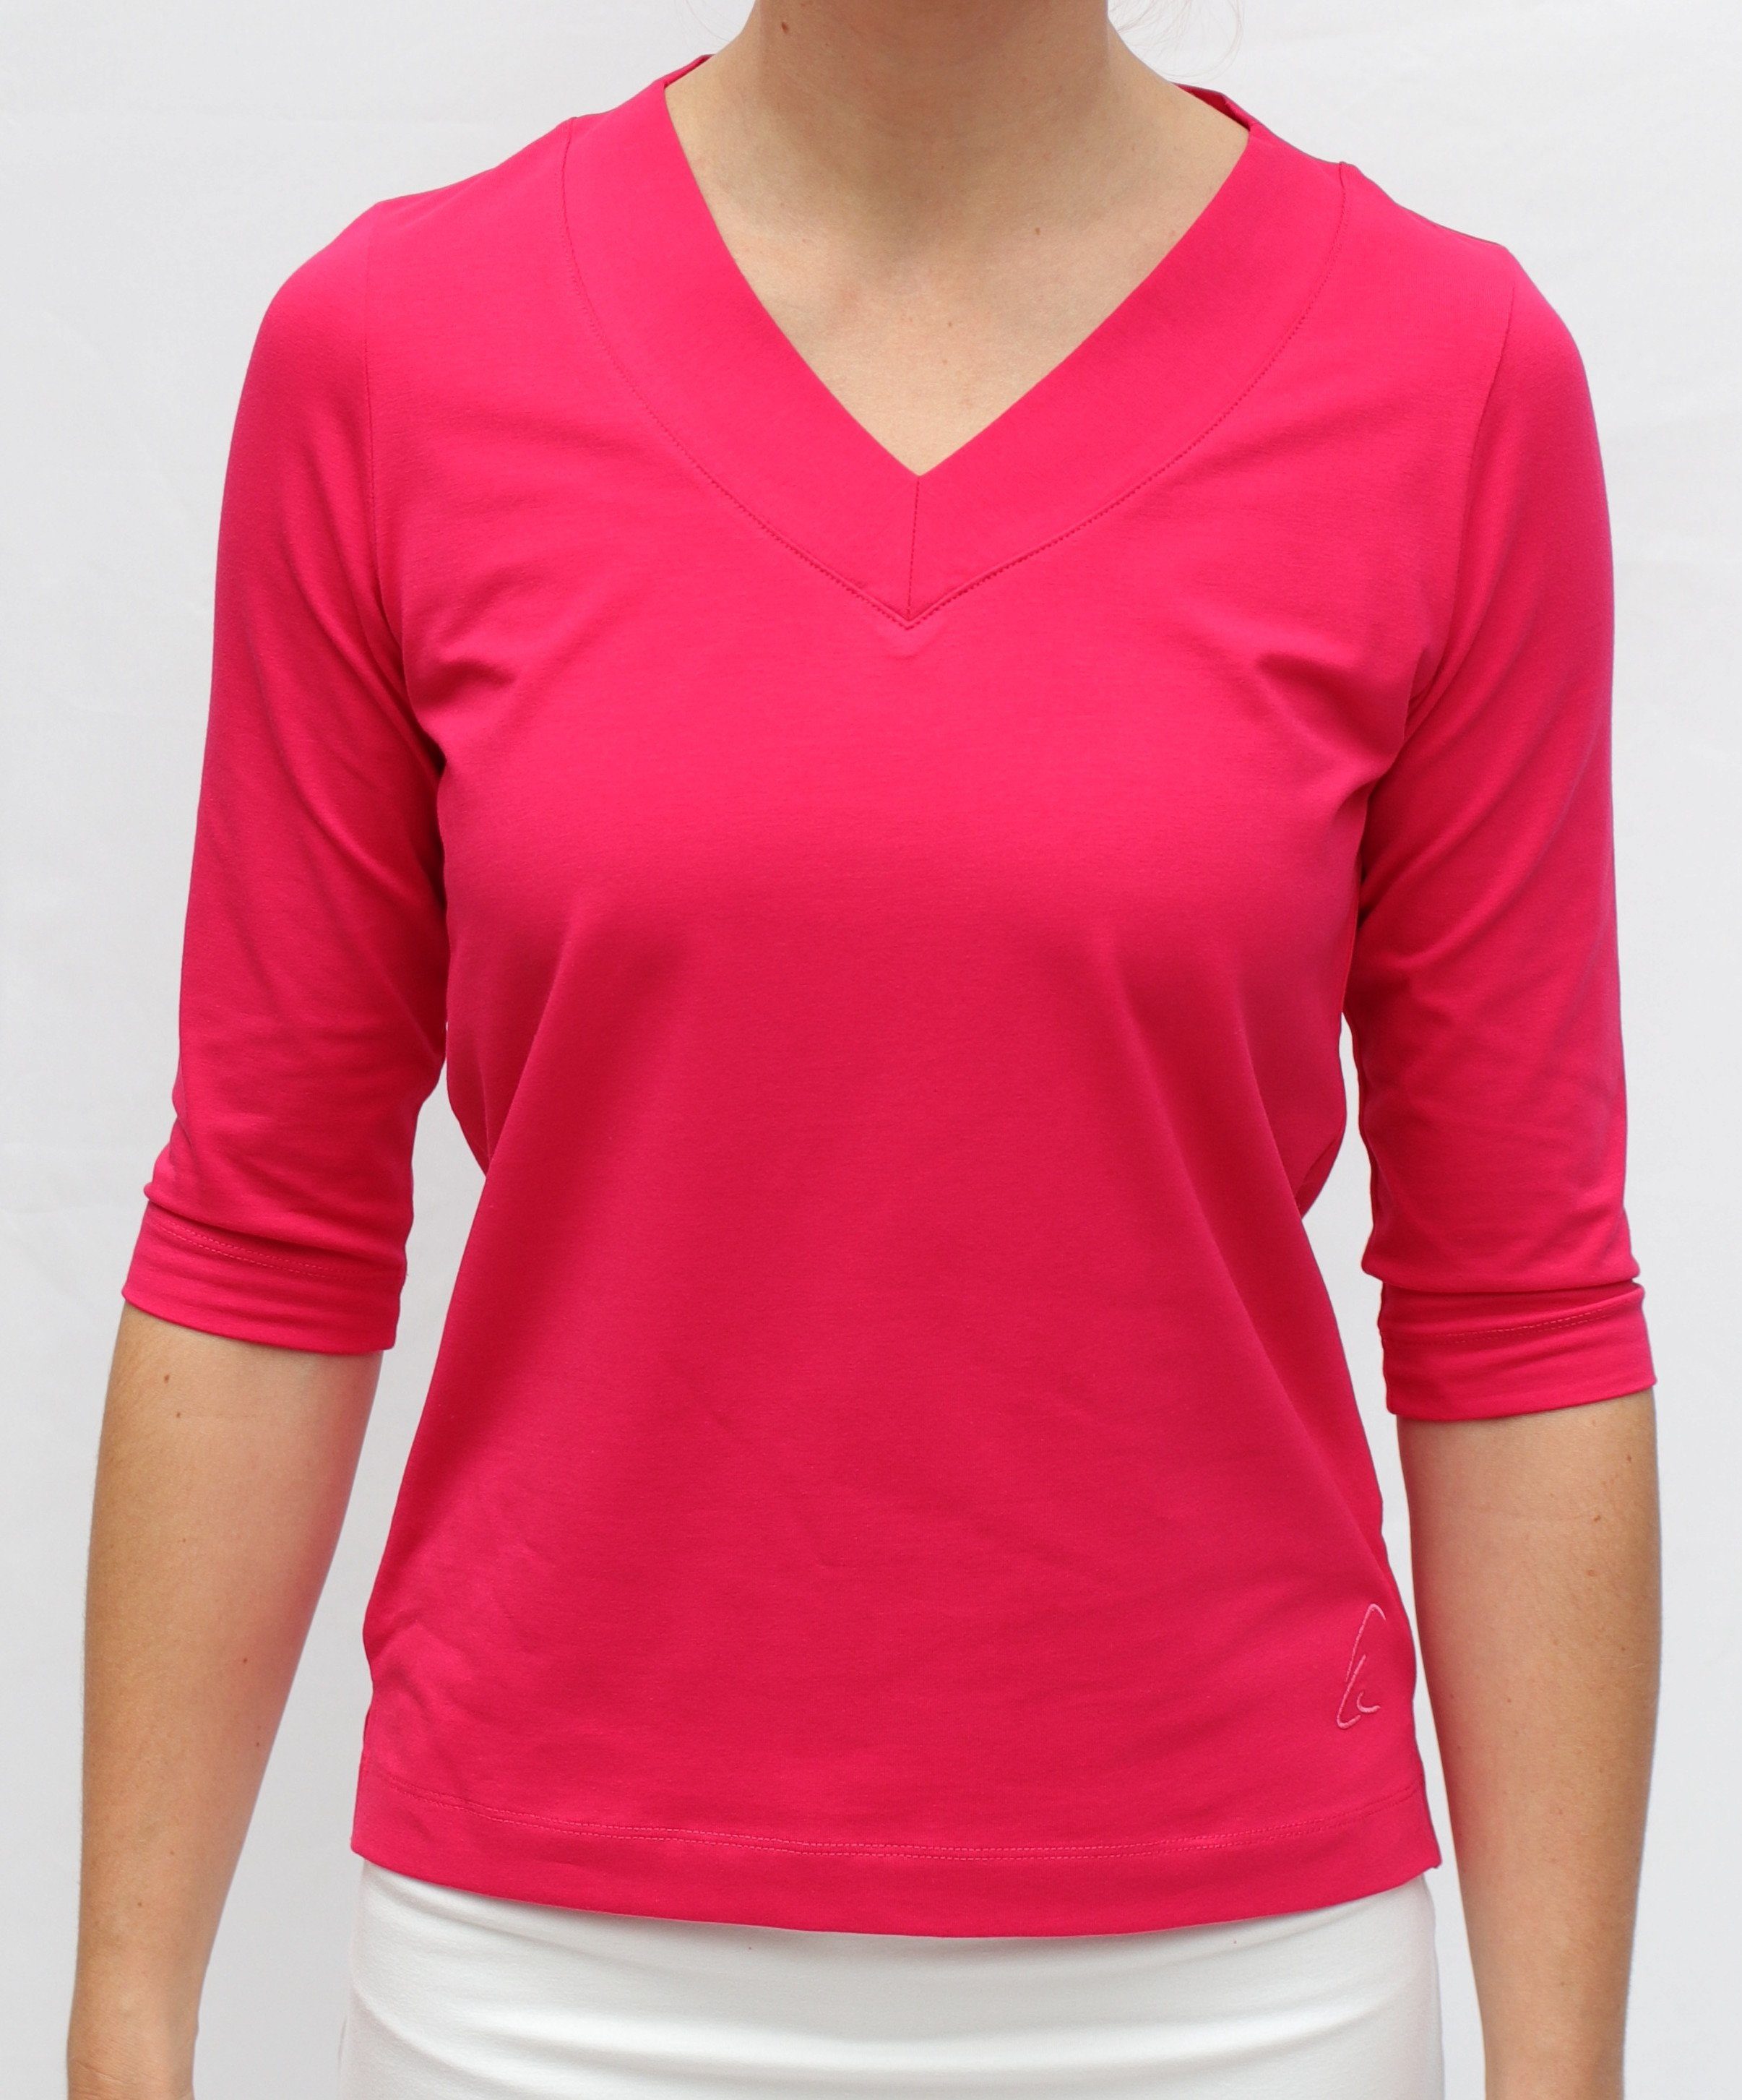 ESPARTO Yogatop in lang Damen-Shirt geschnitten Ärmel, Bio-Baumwolle leicht Sundar und geschlitzt, Raspberry 2/3 V-Ausschnitt